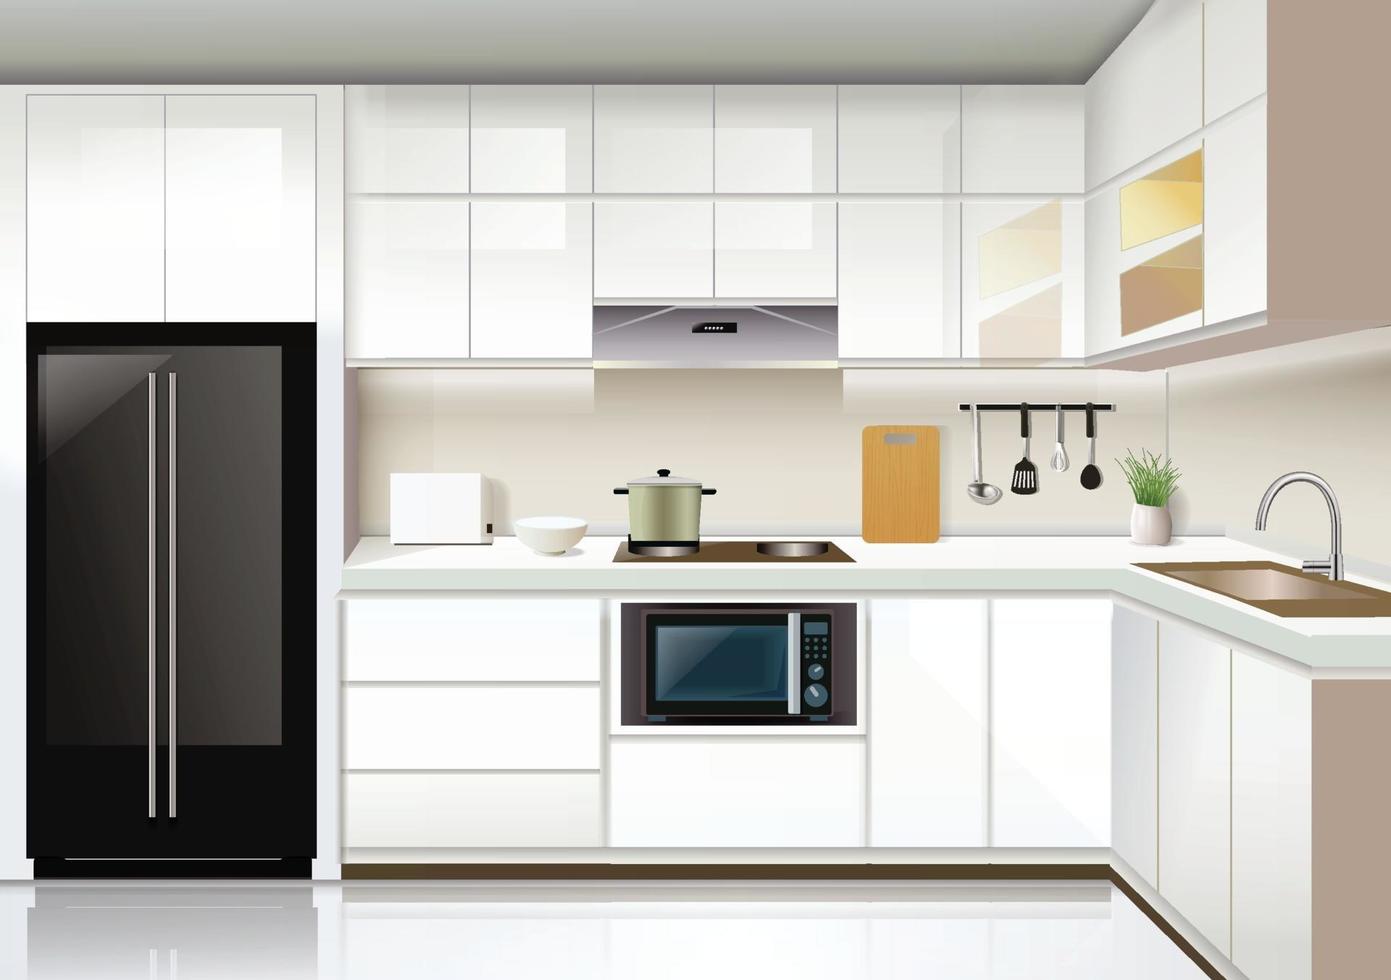 Modern kitchen interior background template vector